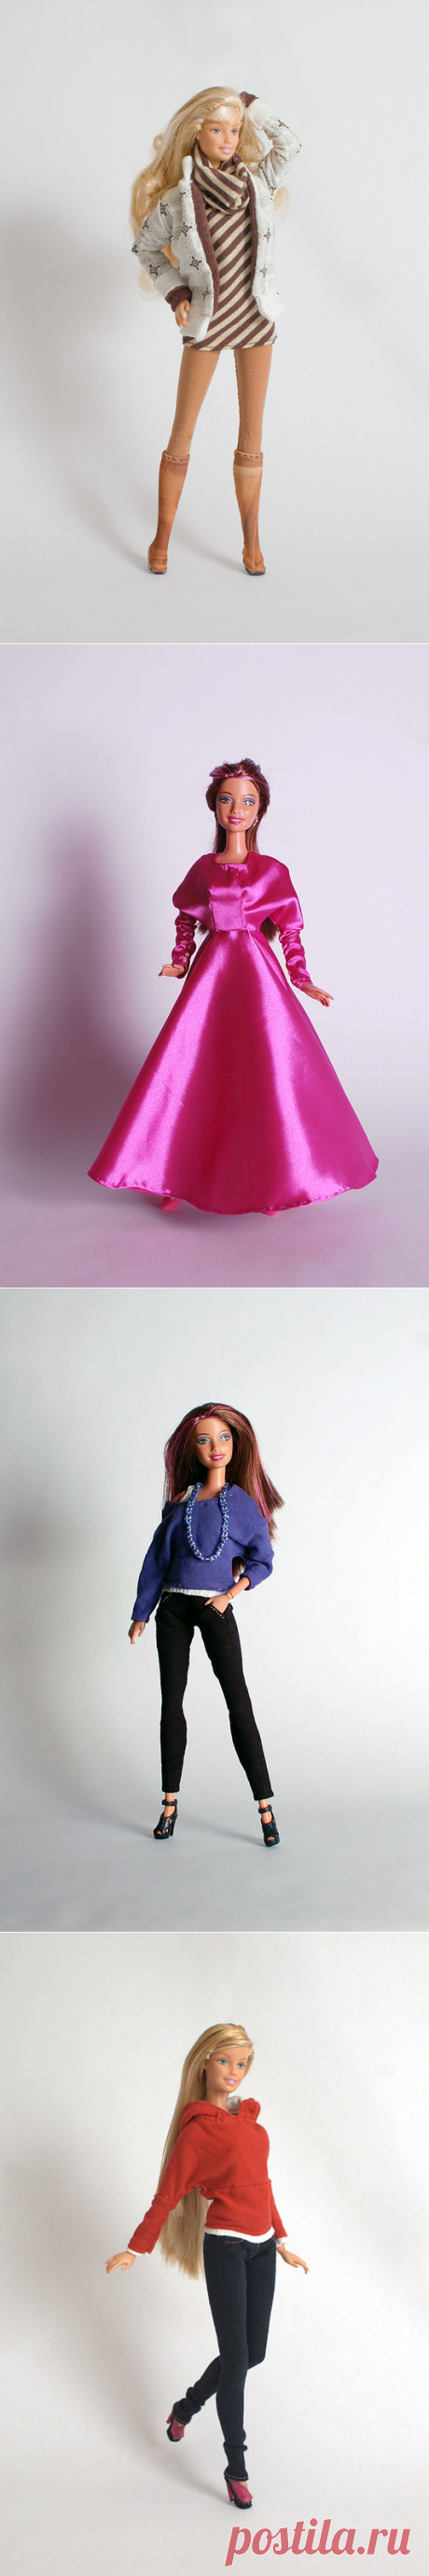 DollClothes | Одежда для кукол barbie своими руками. Выкройки кукольных вещей. | Страница 4